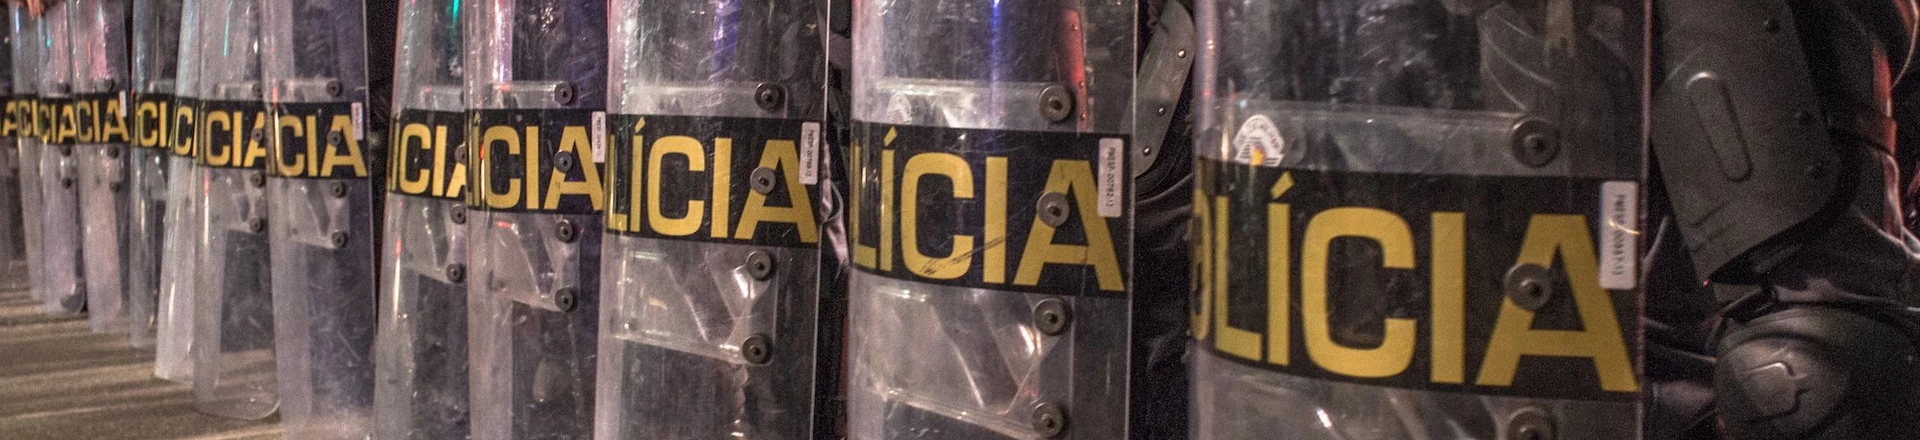 SÃO PAULO, SP, 01.06.2016 - Batalh?£o de Choque da Pol??cia Militar durante o protesto "Por Todas Elas contra a Cultura do Estupro", na avenida Paulista, em S?£o Paulo. (Foto: Alf Ribeiro/Folhapress)